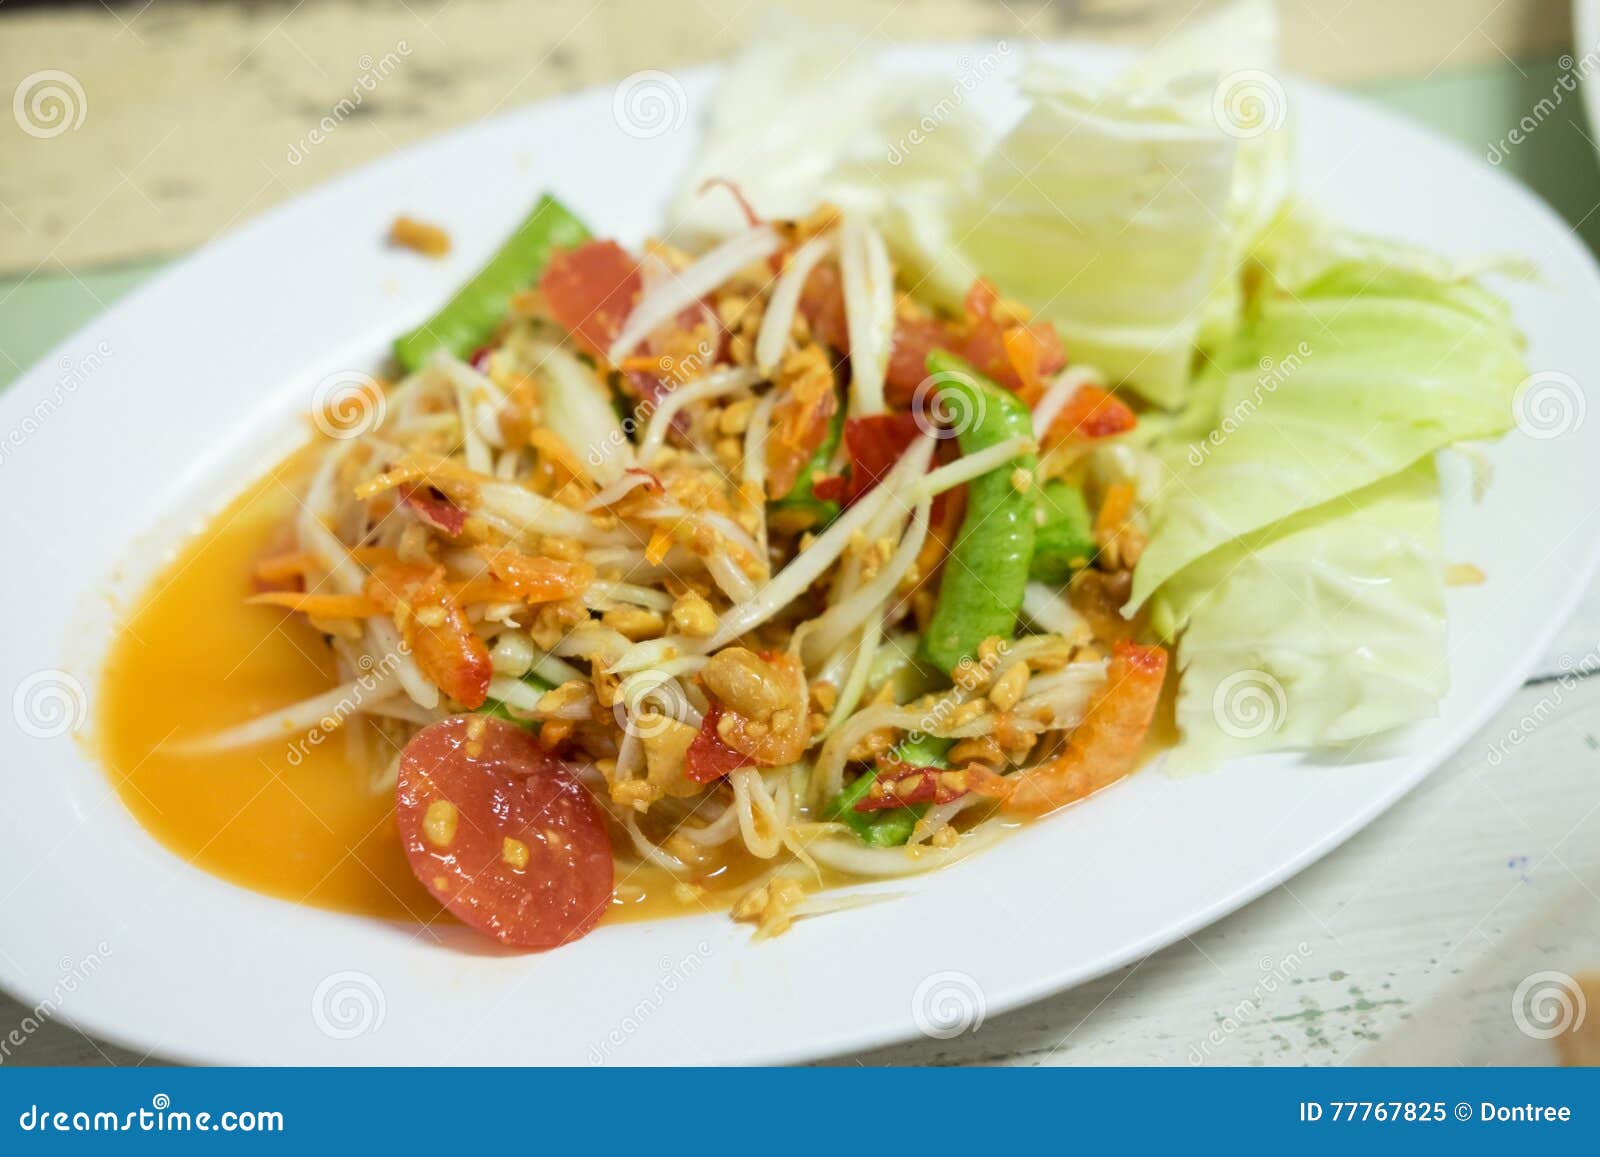 Thai papaya salad, Som Tum from Thailand